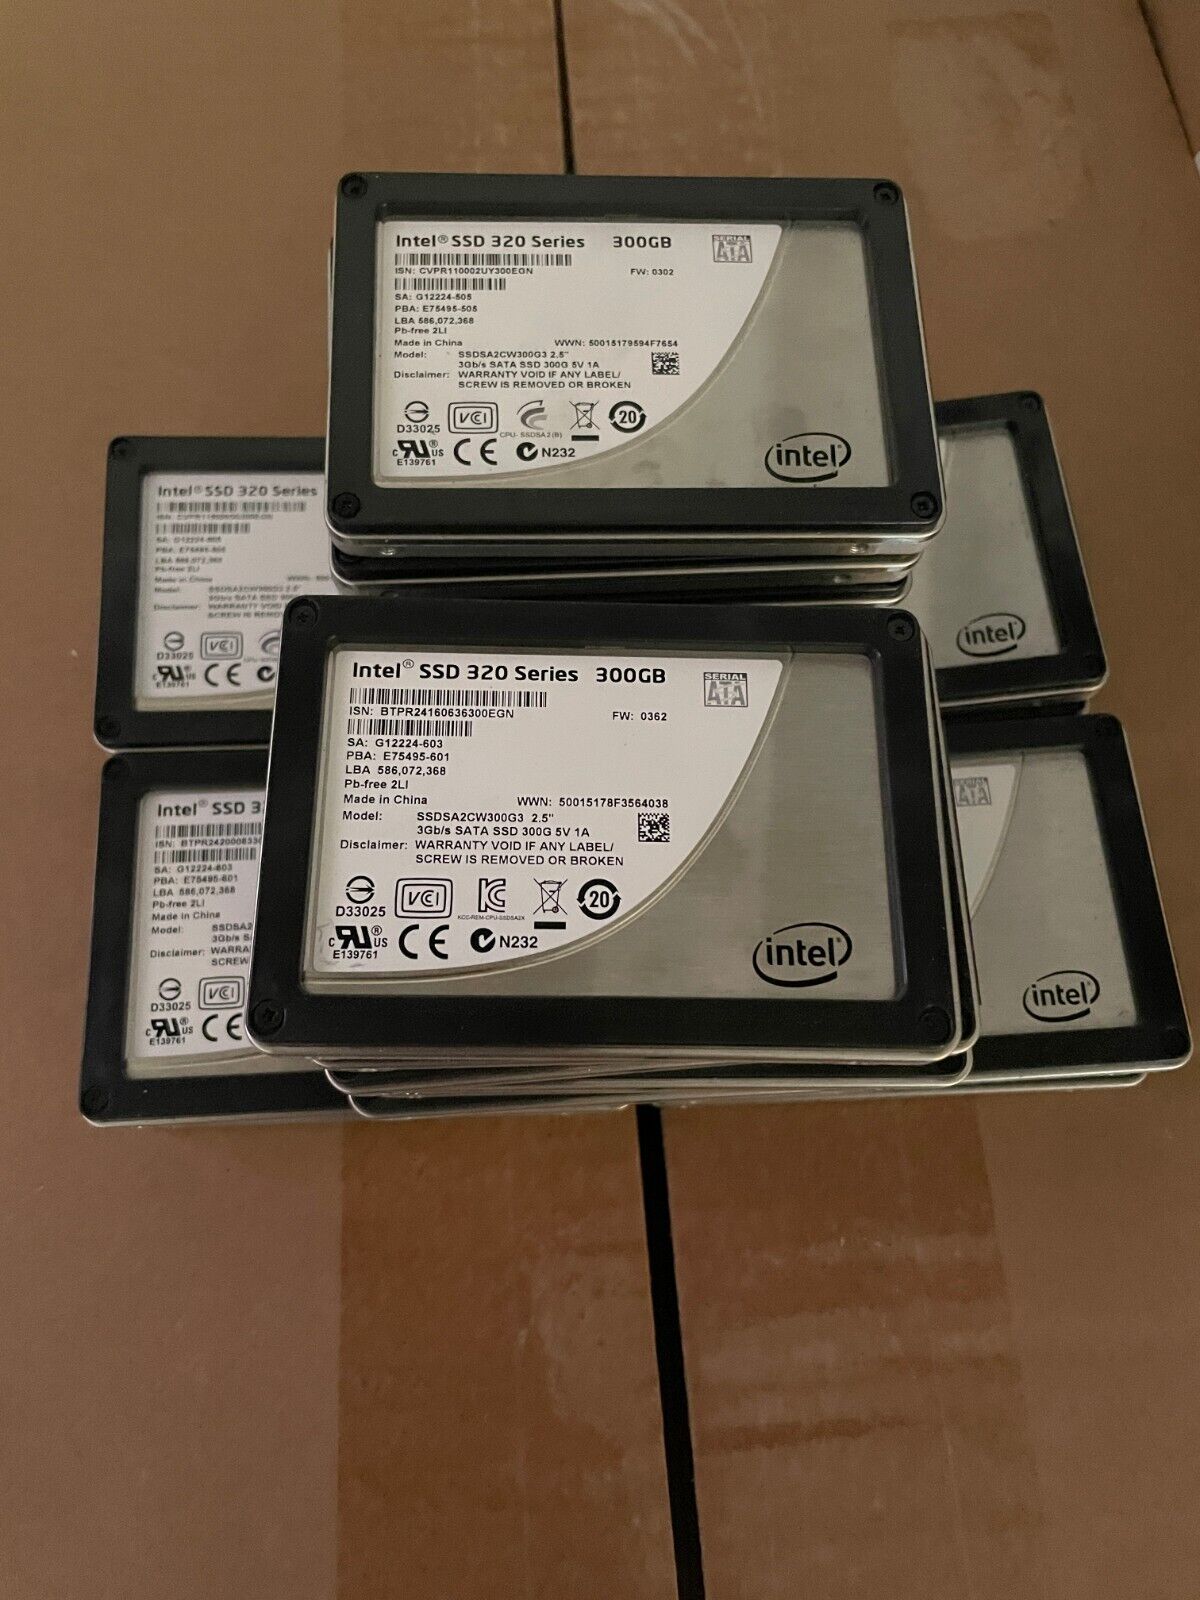 Intel SSD 320 Series 300GB SSD 2.5 II 3Gb/s Drive SSDSA2CW300G3 - PRICE PER UNIT